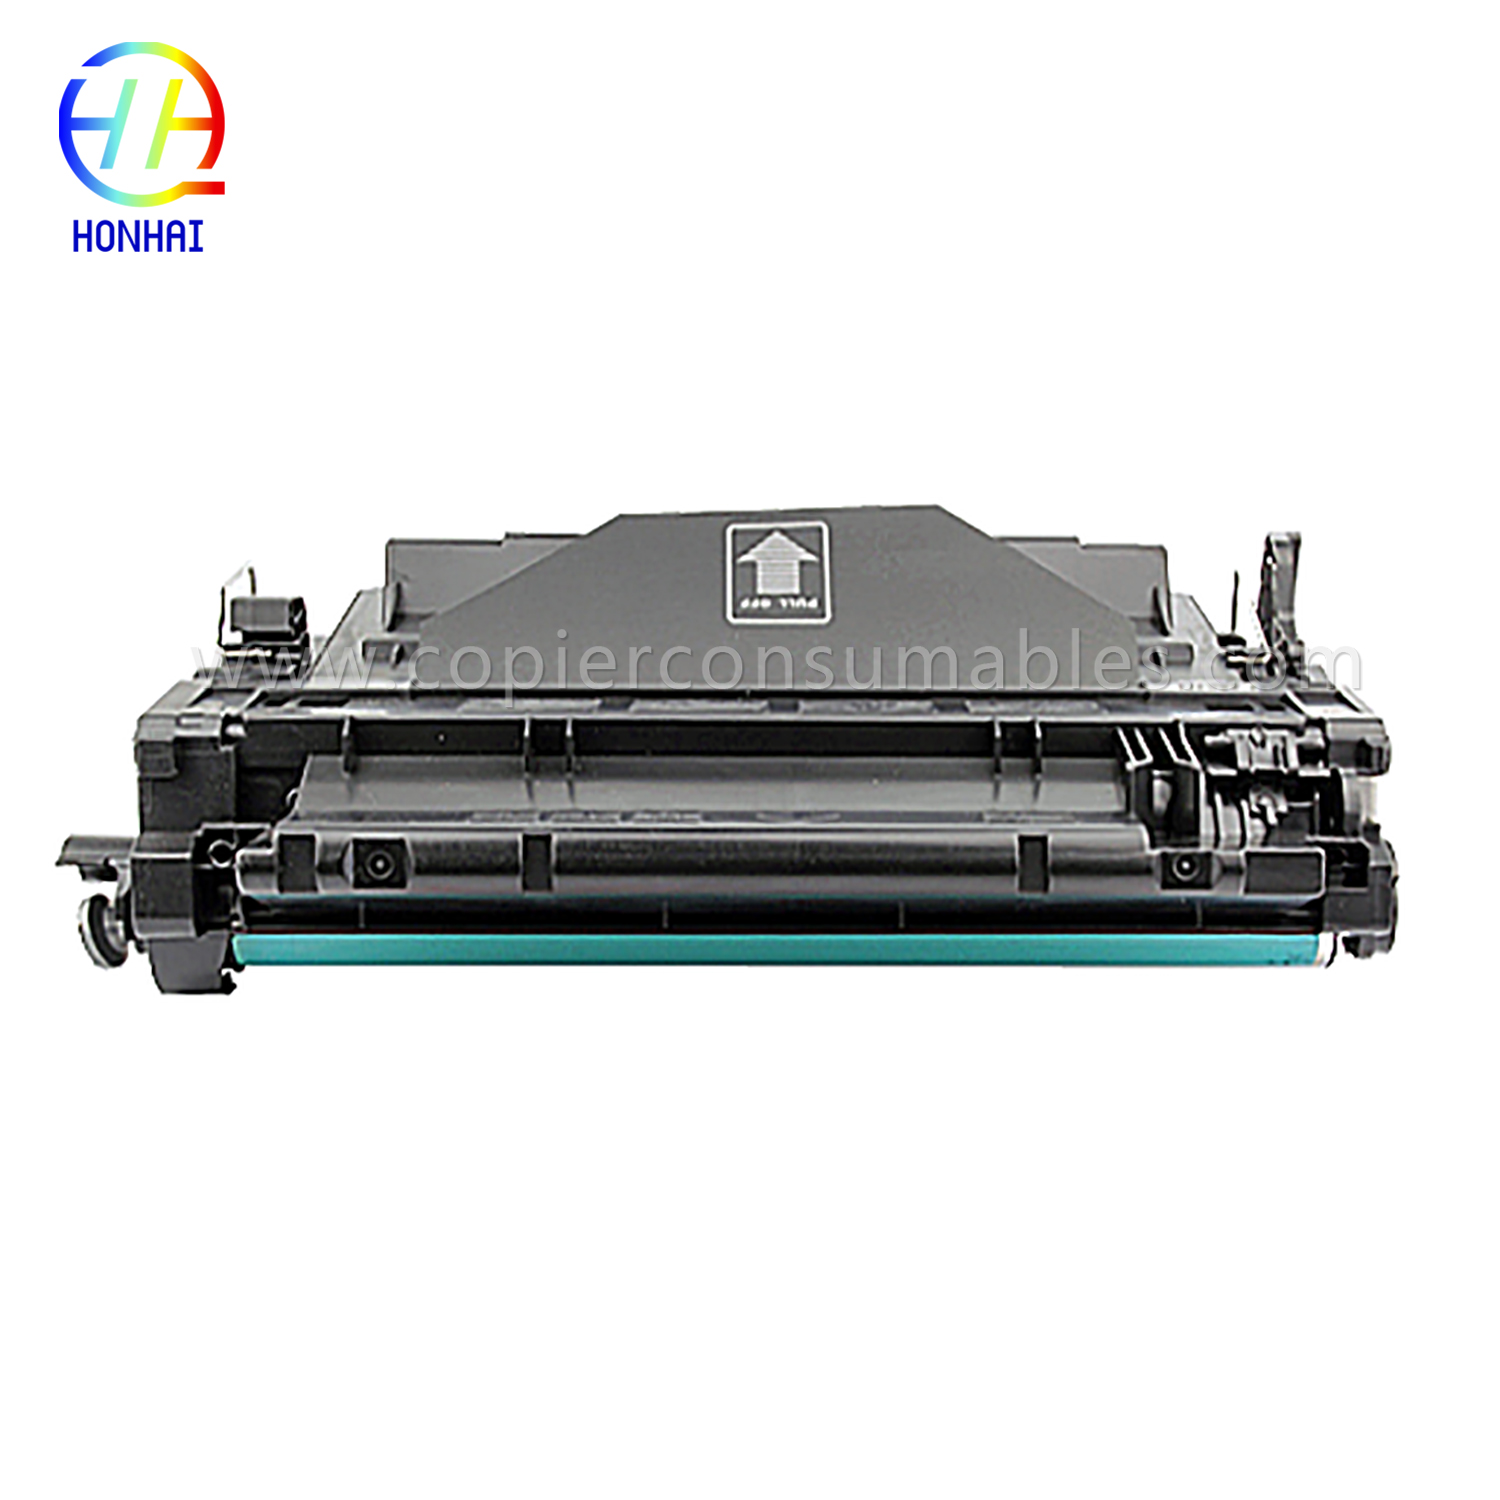 Kleurentonercartridges voor HP LaserJet Pro MFP M521dn Enterprise P3015 CE255X